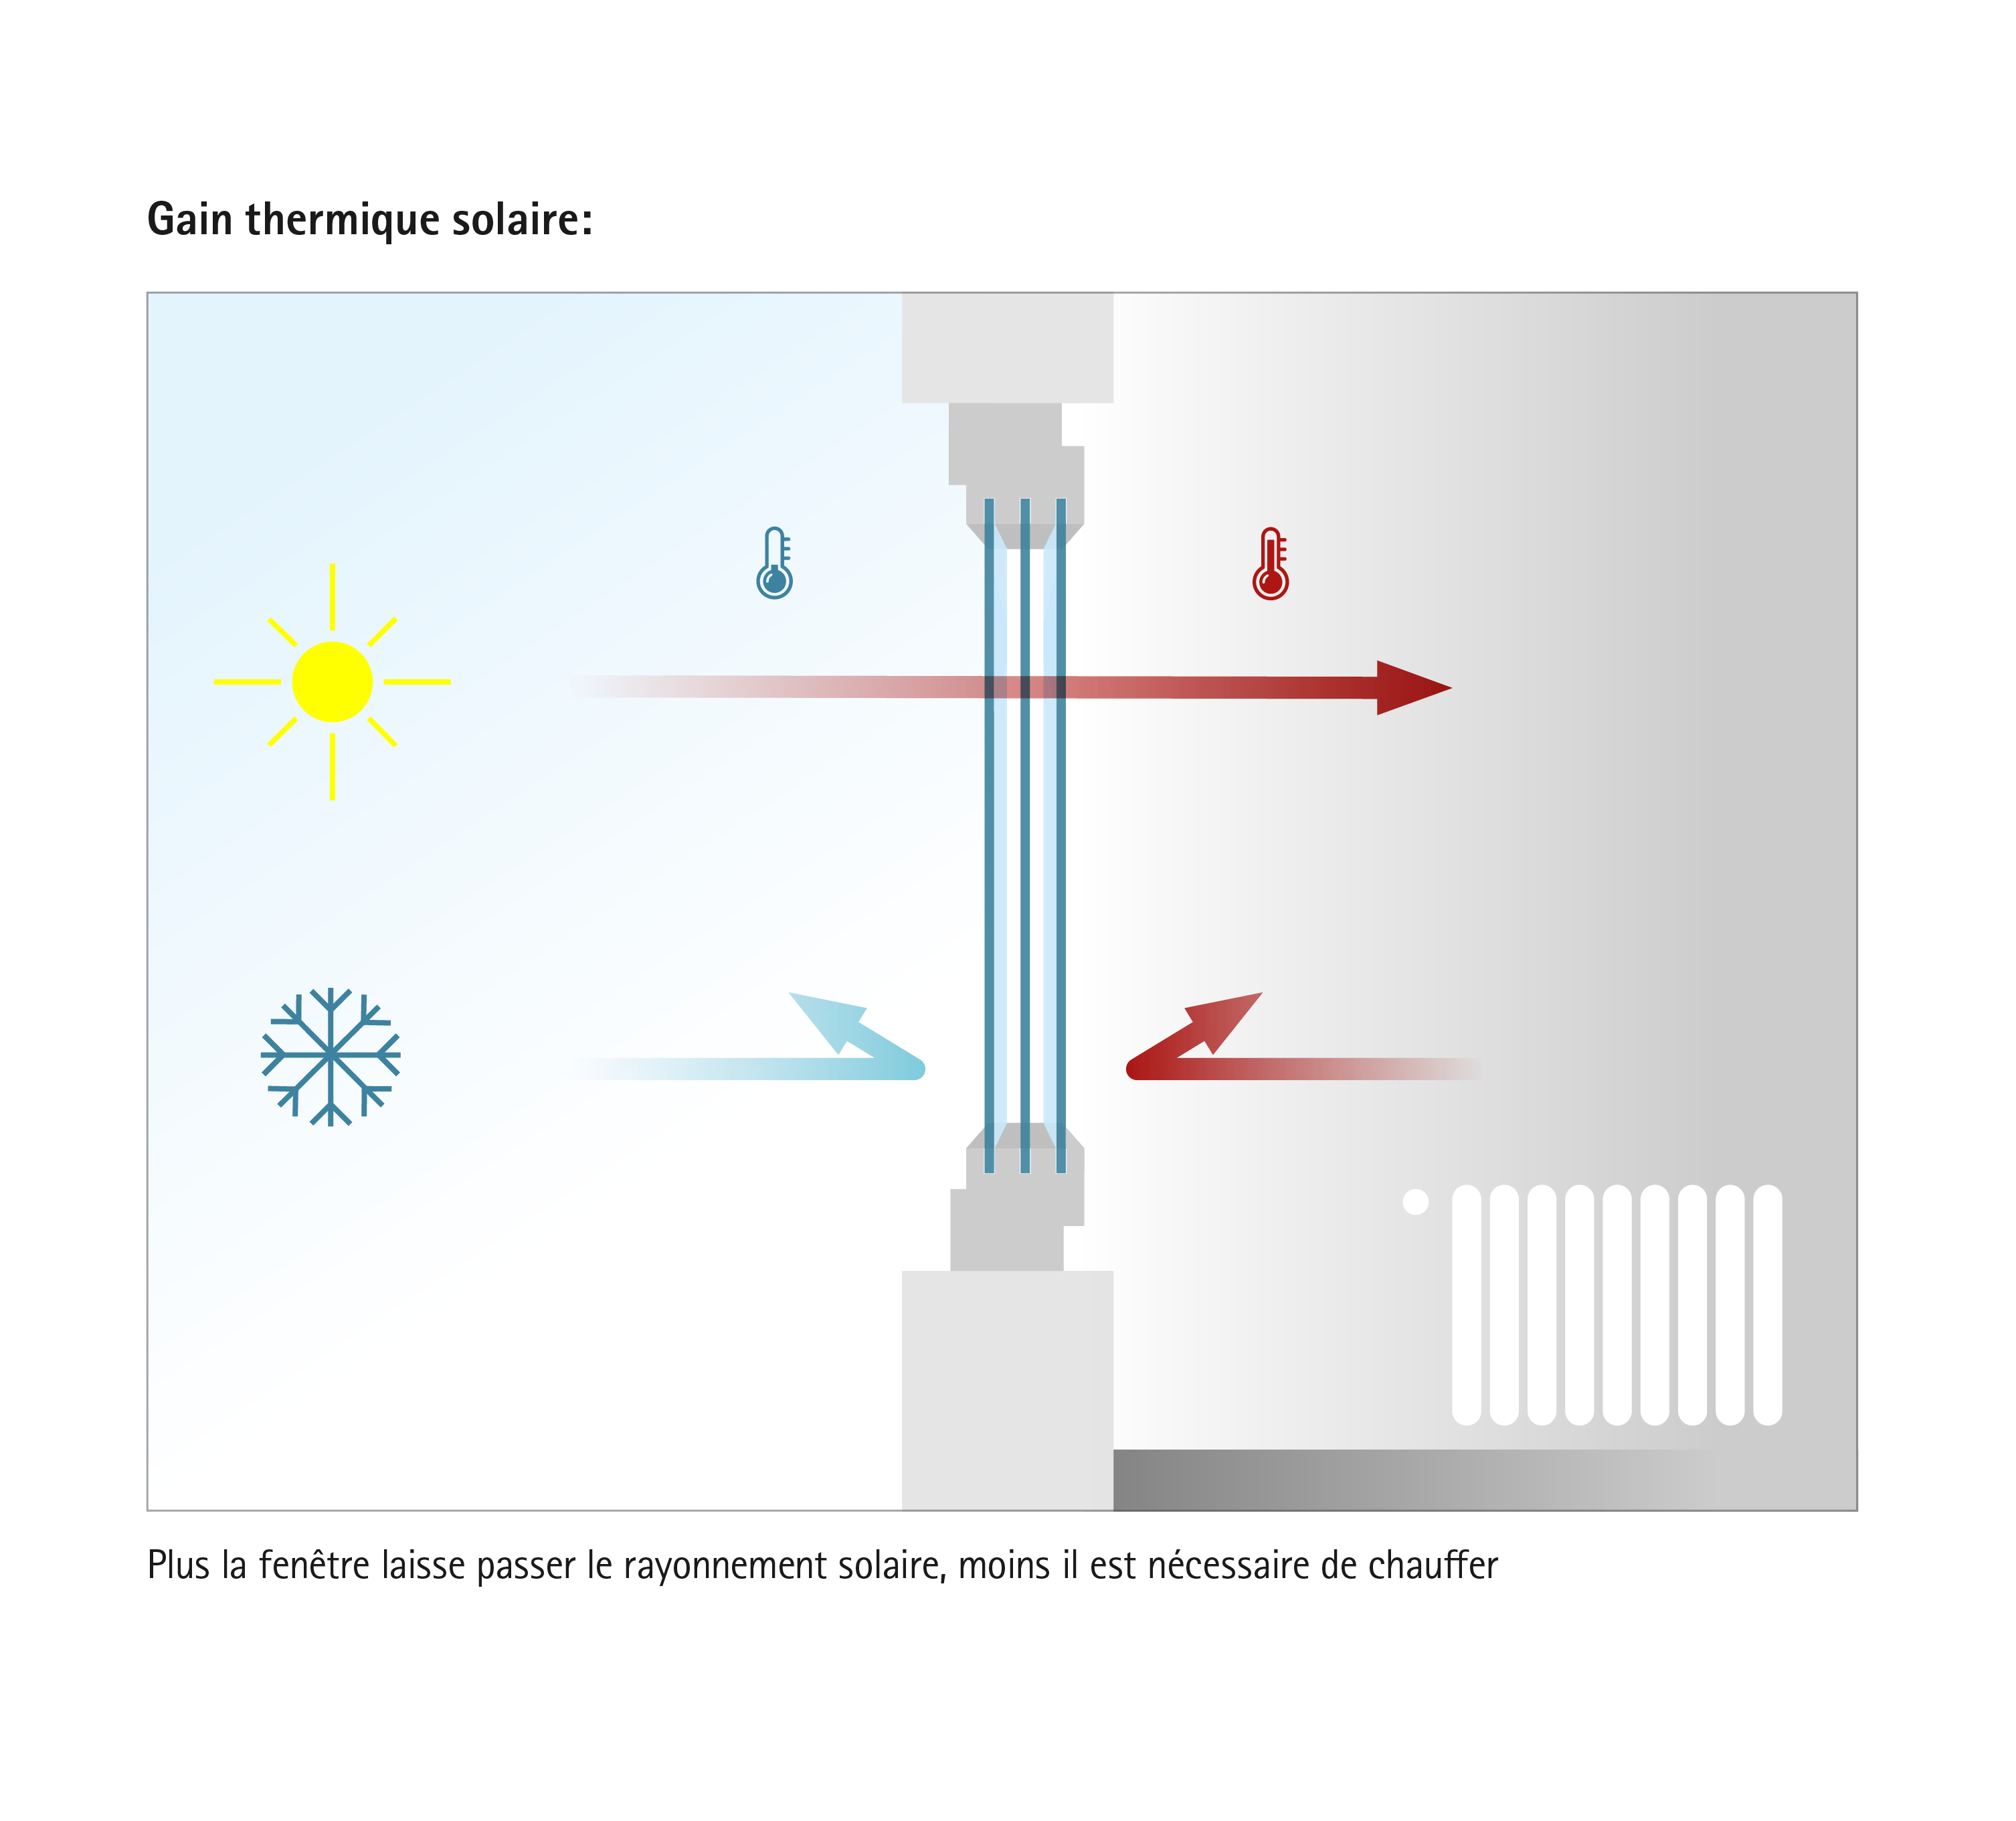 Gains d'énergie solaire : les fenêtres modernes laissent entrer les rayons du soleil dans la maison tout en réduisant la perte d'énergie thermique précieuse.